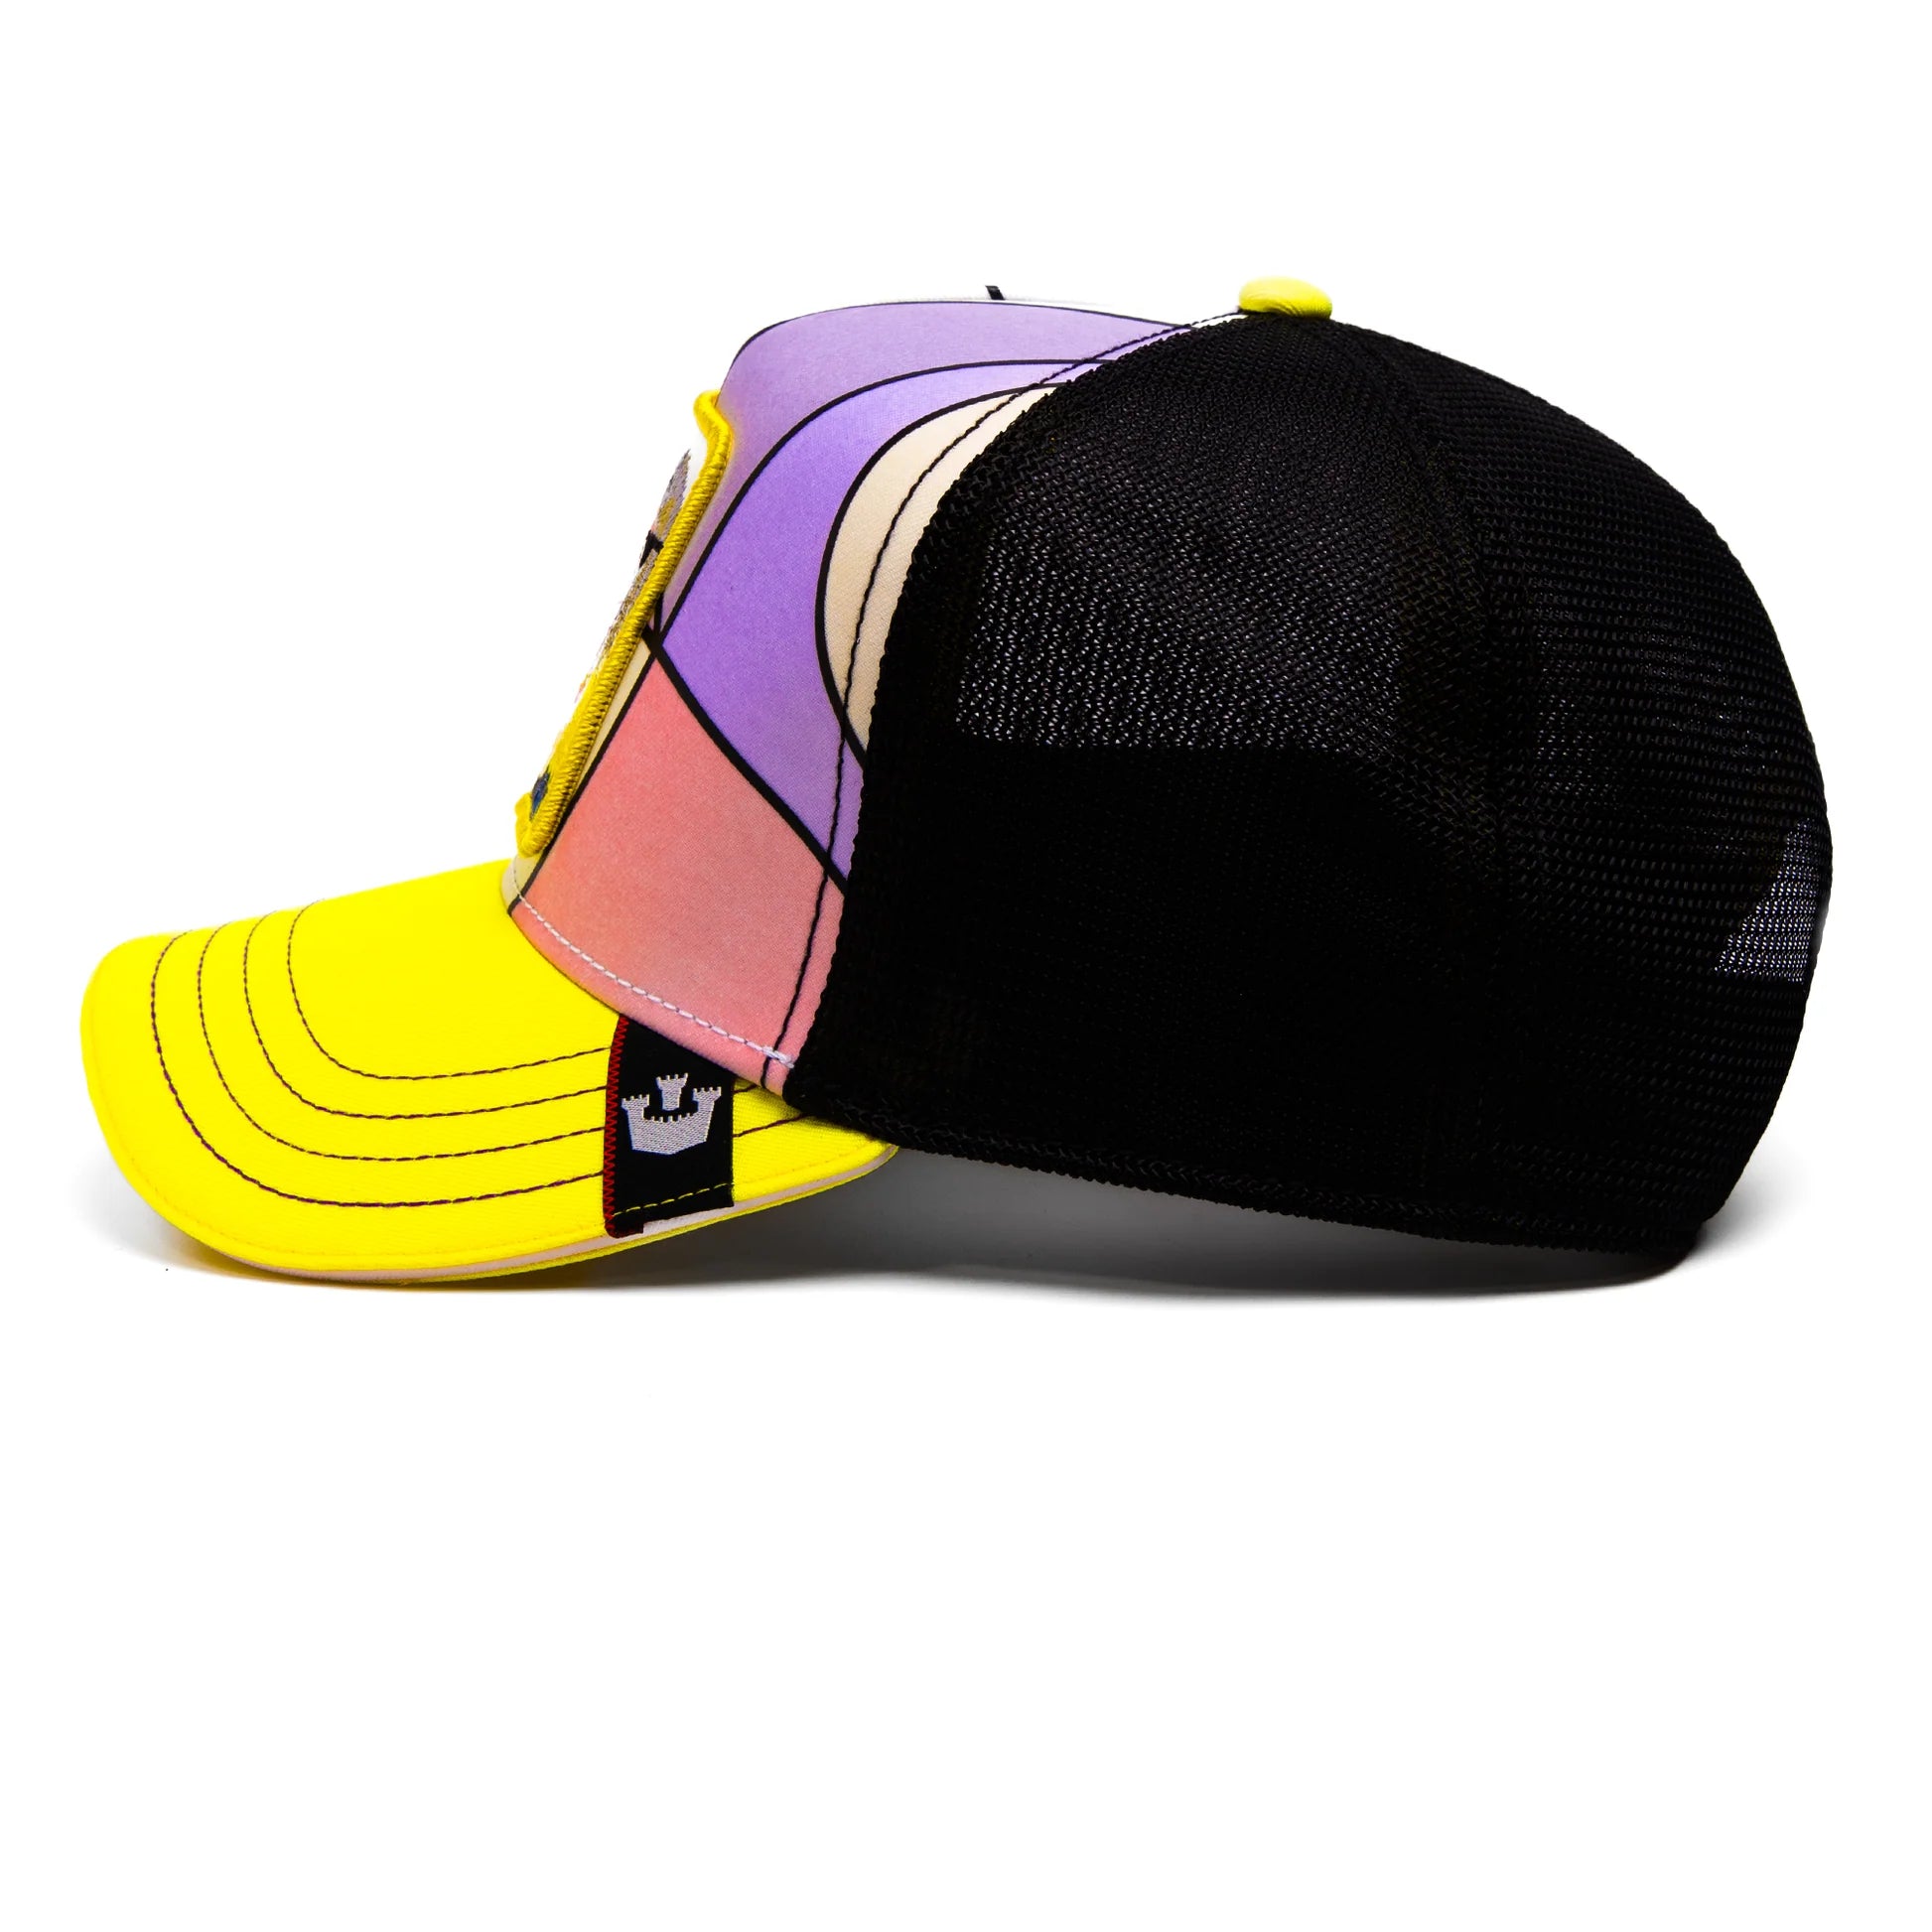 'Goorin Bros. Merriermaker Trucker Hat' in 'Yellow' colour